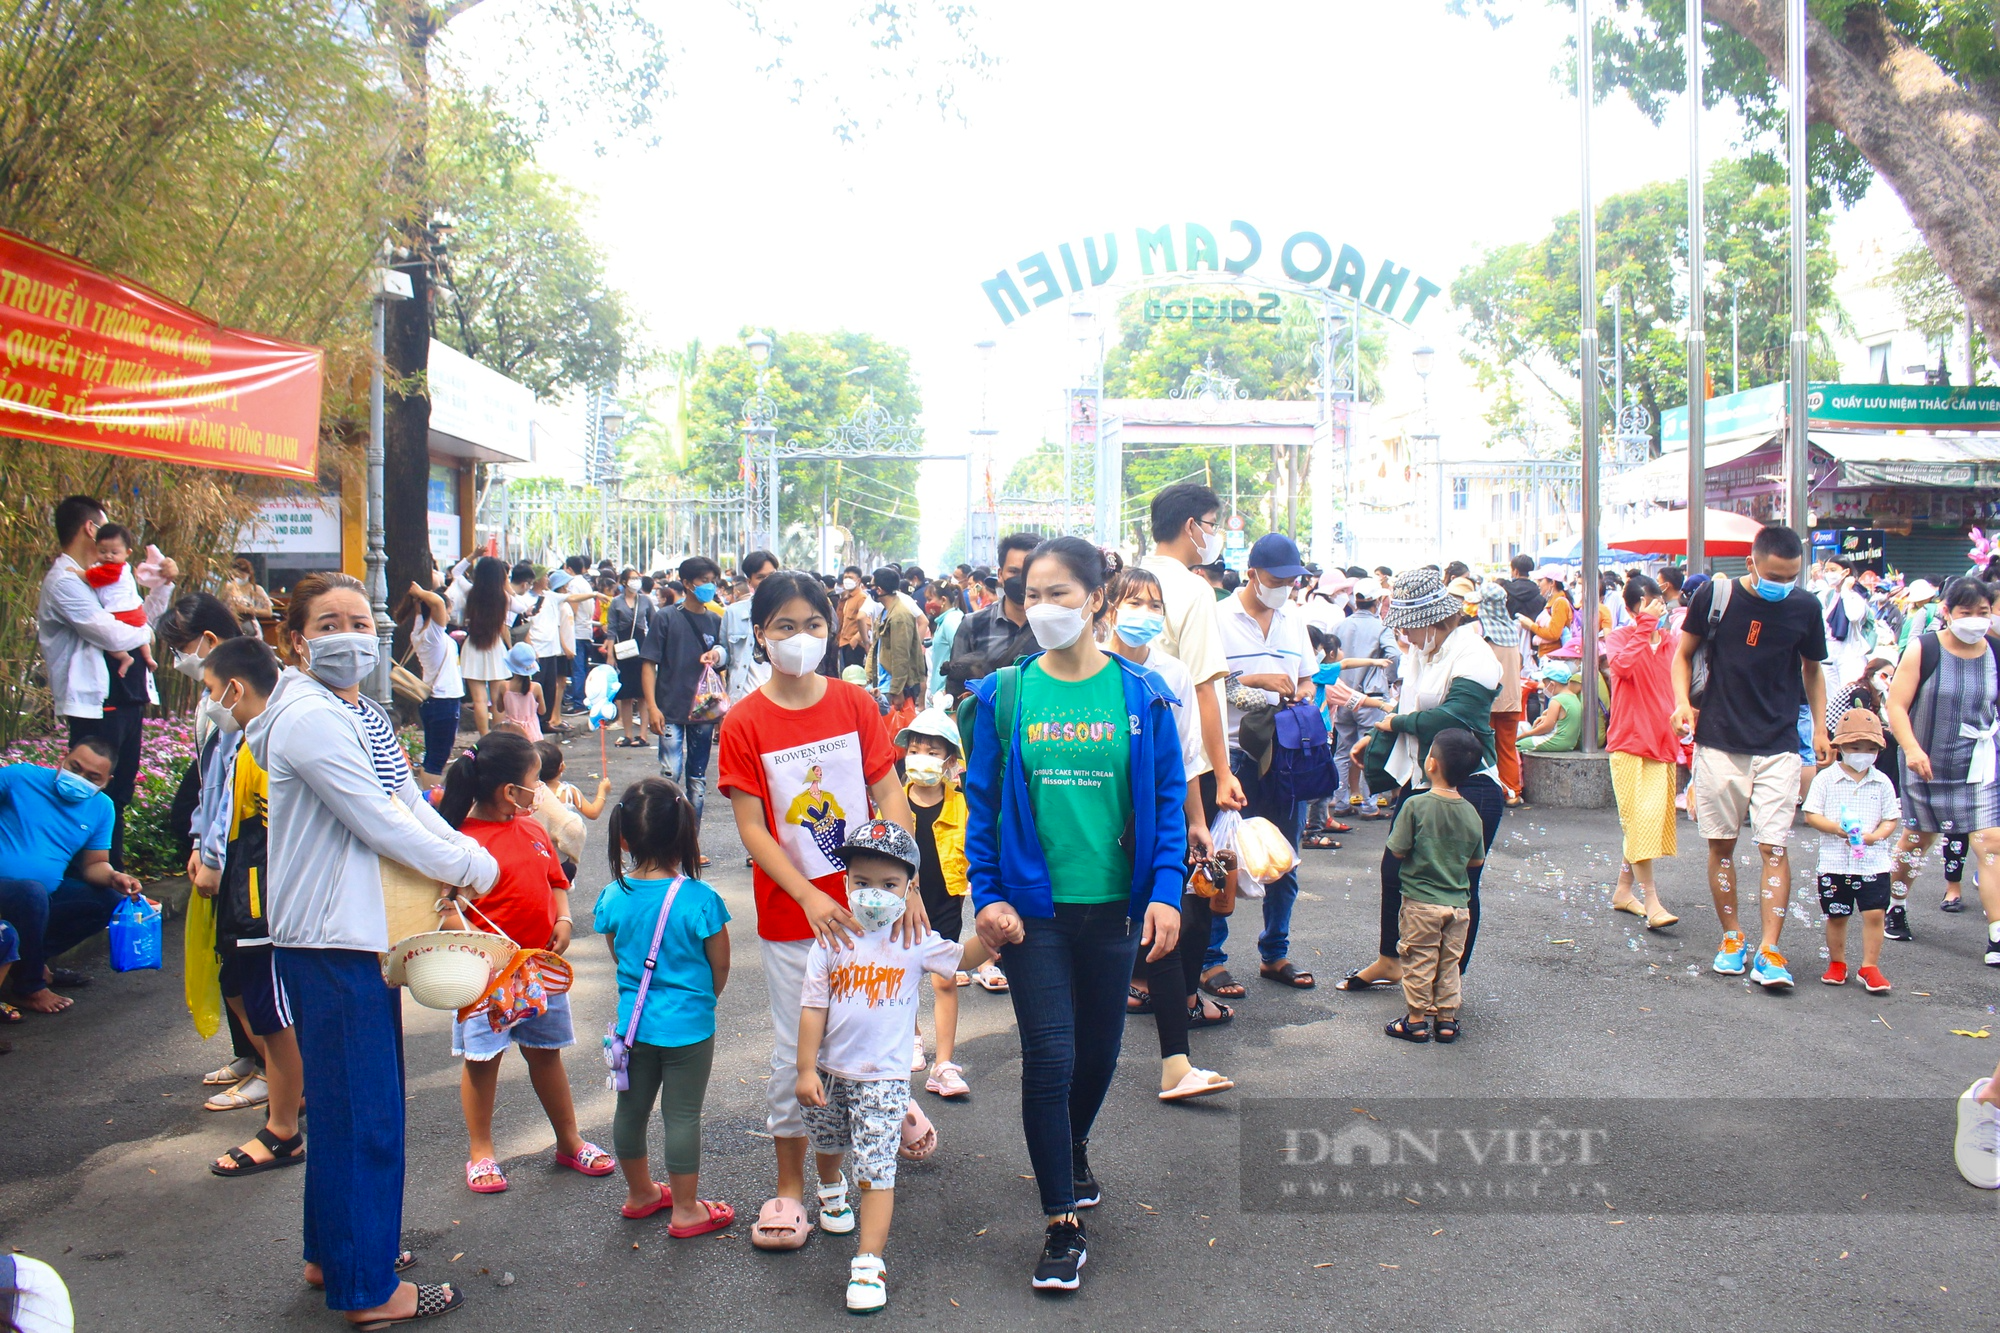 Bất ngờ nhiều quần thể sướng đùa “quốc dân” bên trên Thành Phố Sài Gòn free vé cổng lễ 2/9 - Hình ảnh 4.